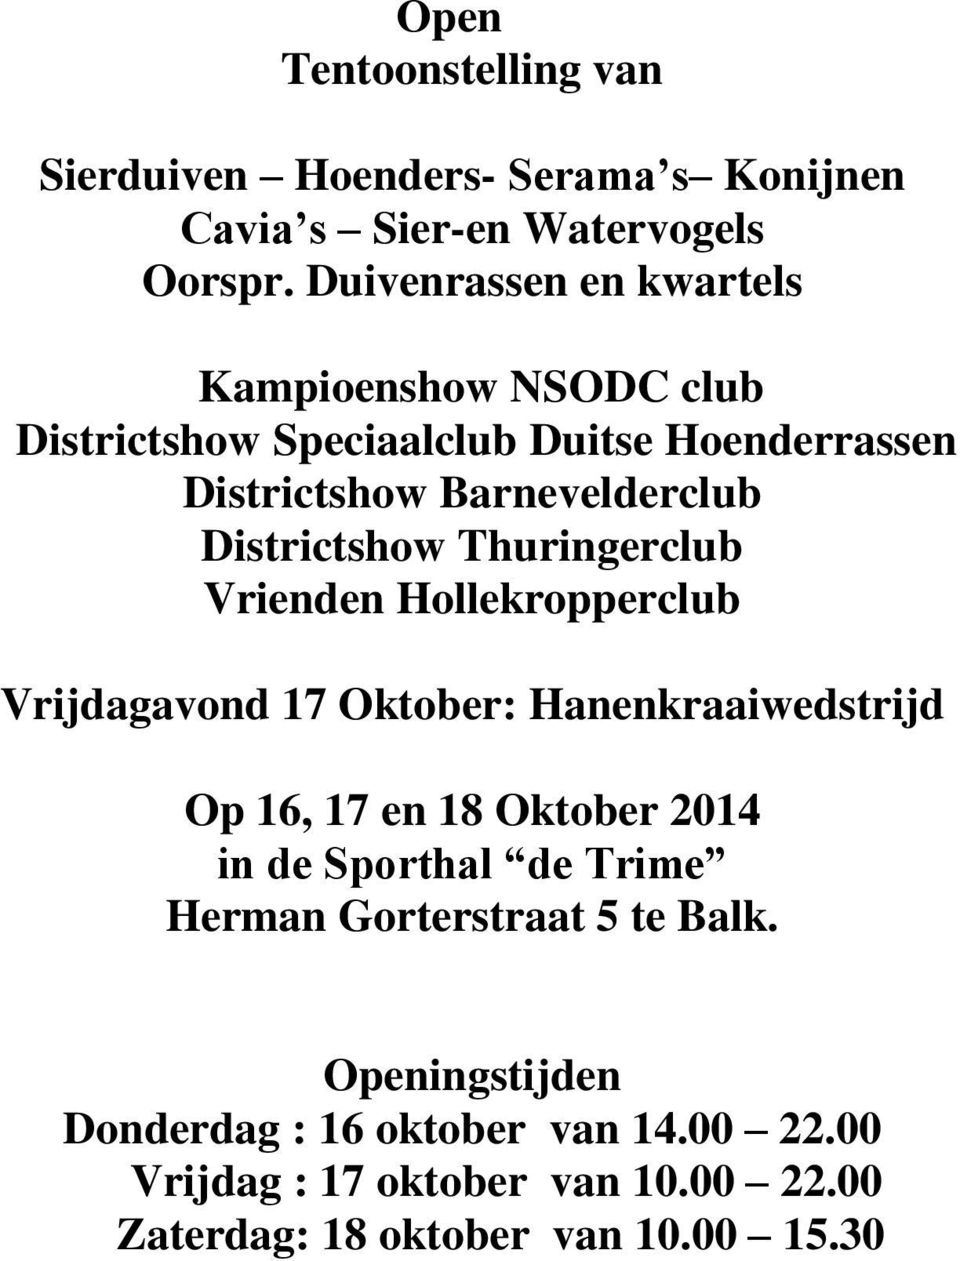 Districtshow Thuringerclub Vrienden Hollekropperclub Vrijdagavond 17 Oktober: Hanenkraaiwedstrijd Op 16, 17 en 18 Oktober 2014 in de